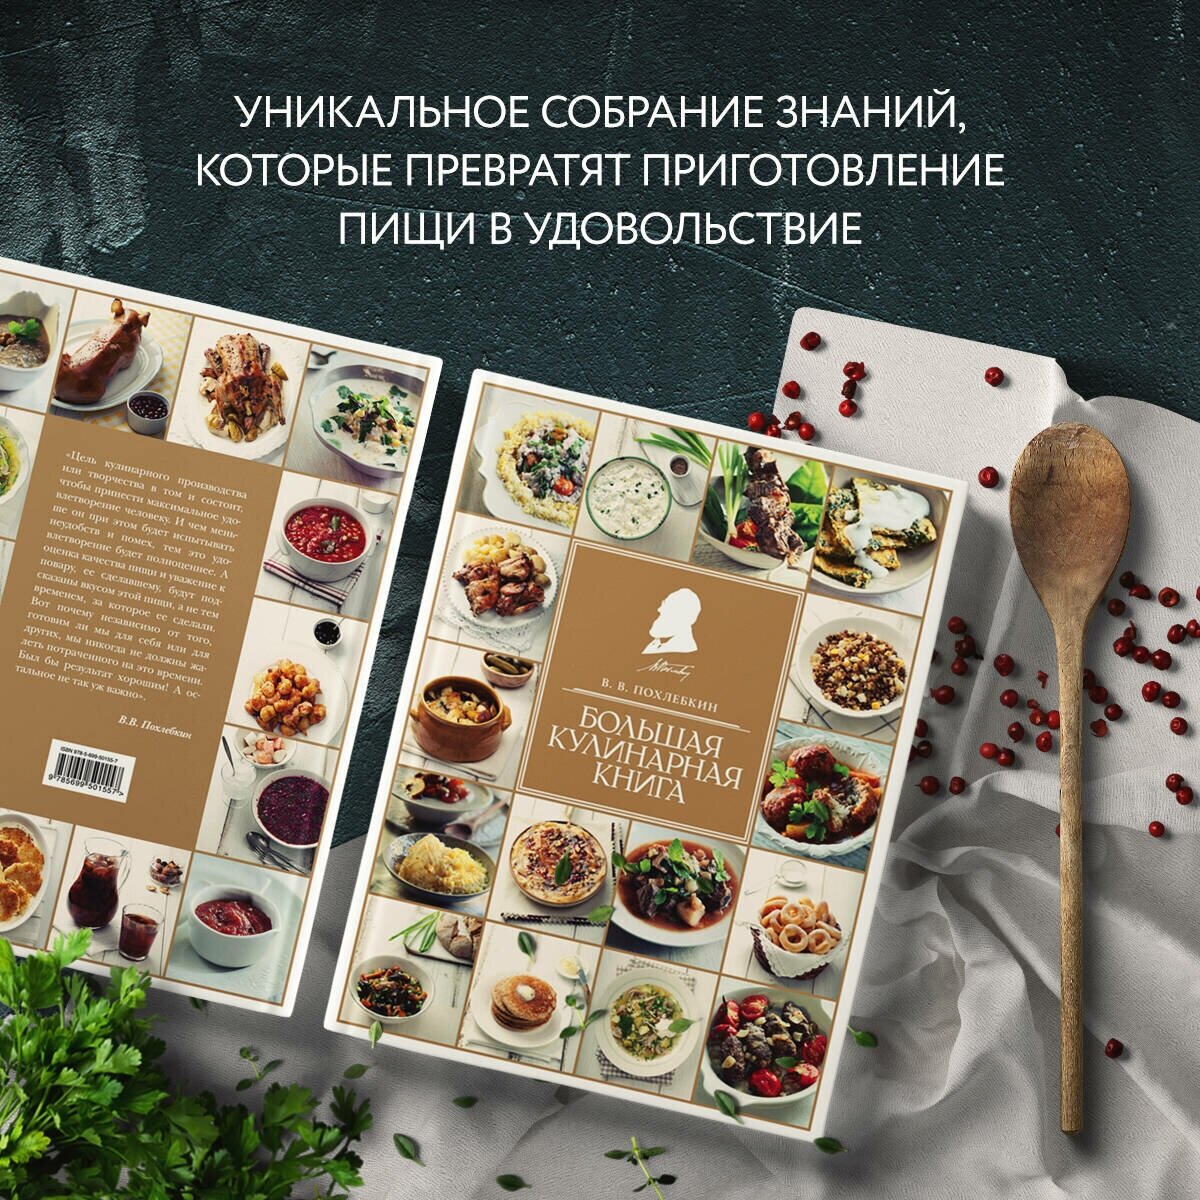 Большая кулинарная книга (Похлебкин Вильям Васильевич) - фото №3